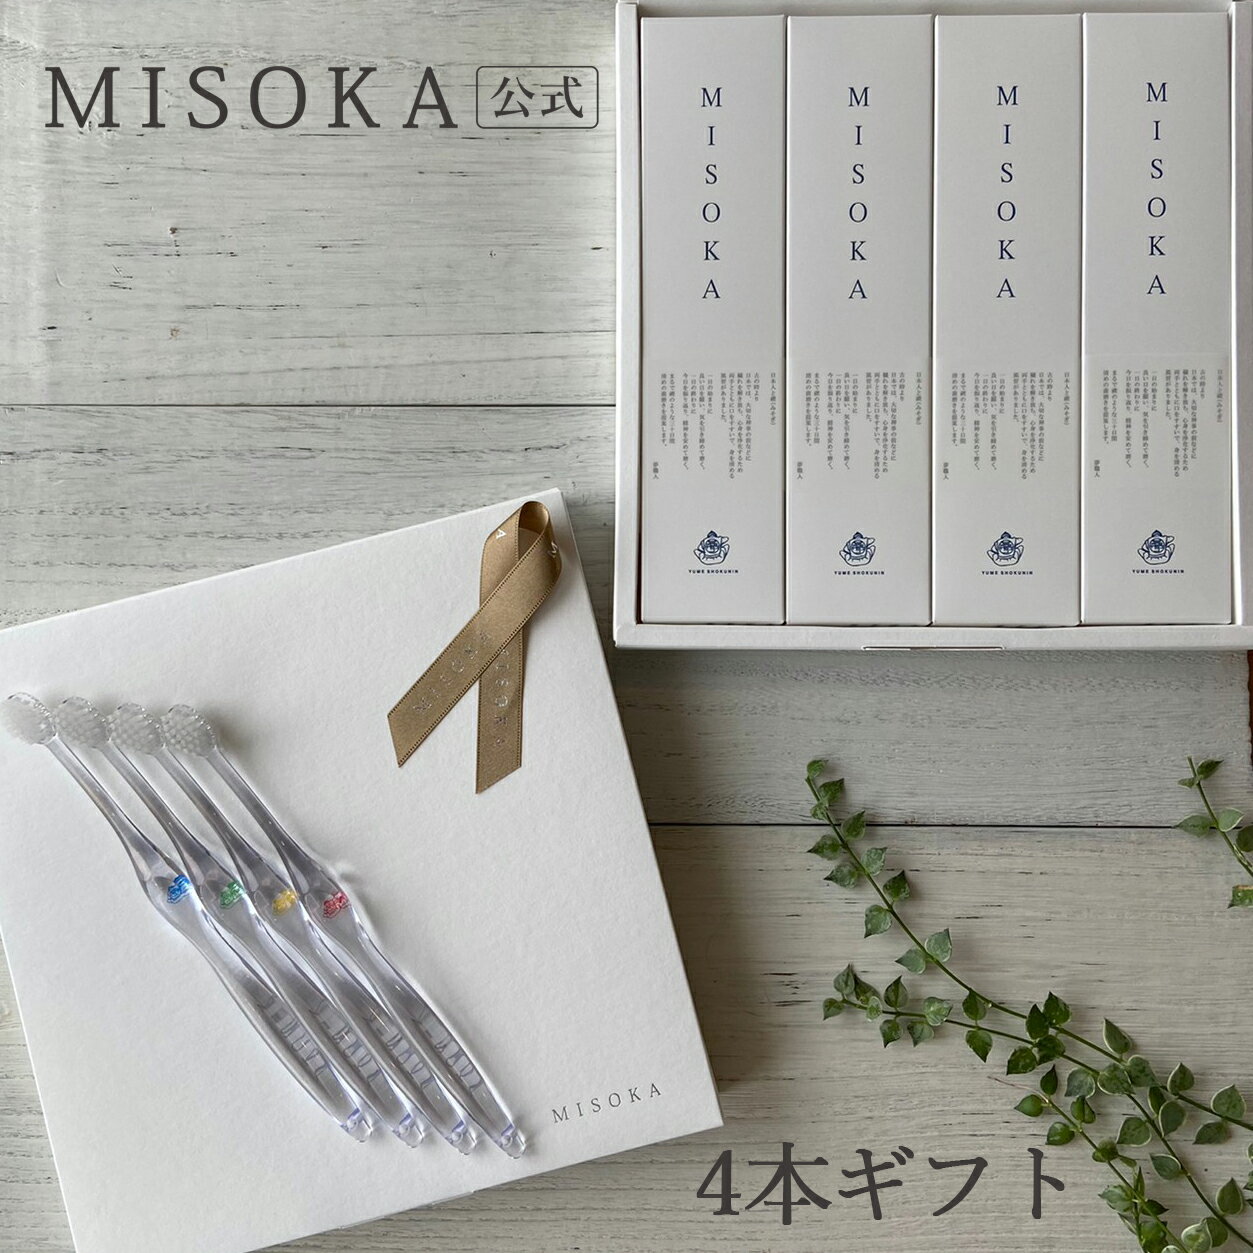 【ギフト】 MISOKA(ミソカ) 歯ブラシ 4...の商品画像